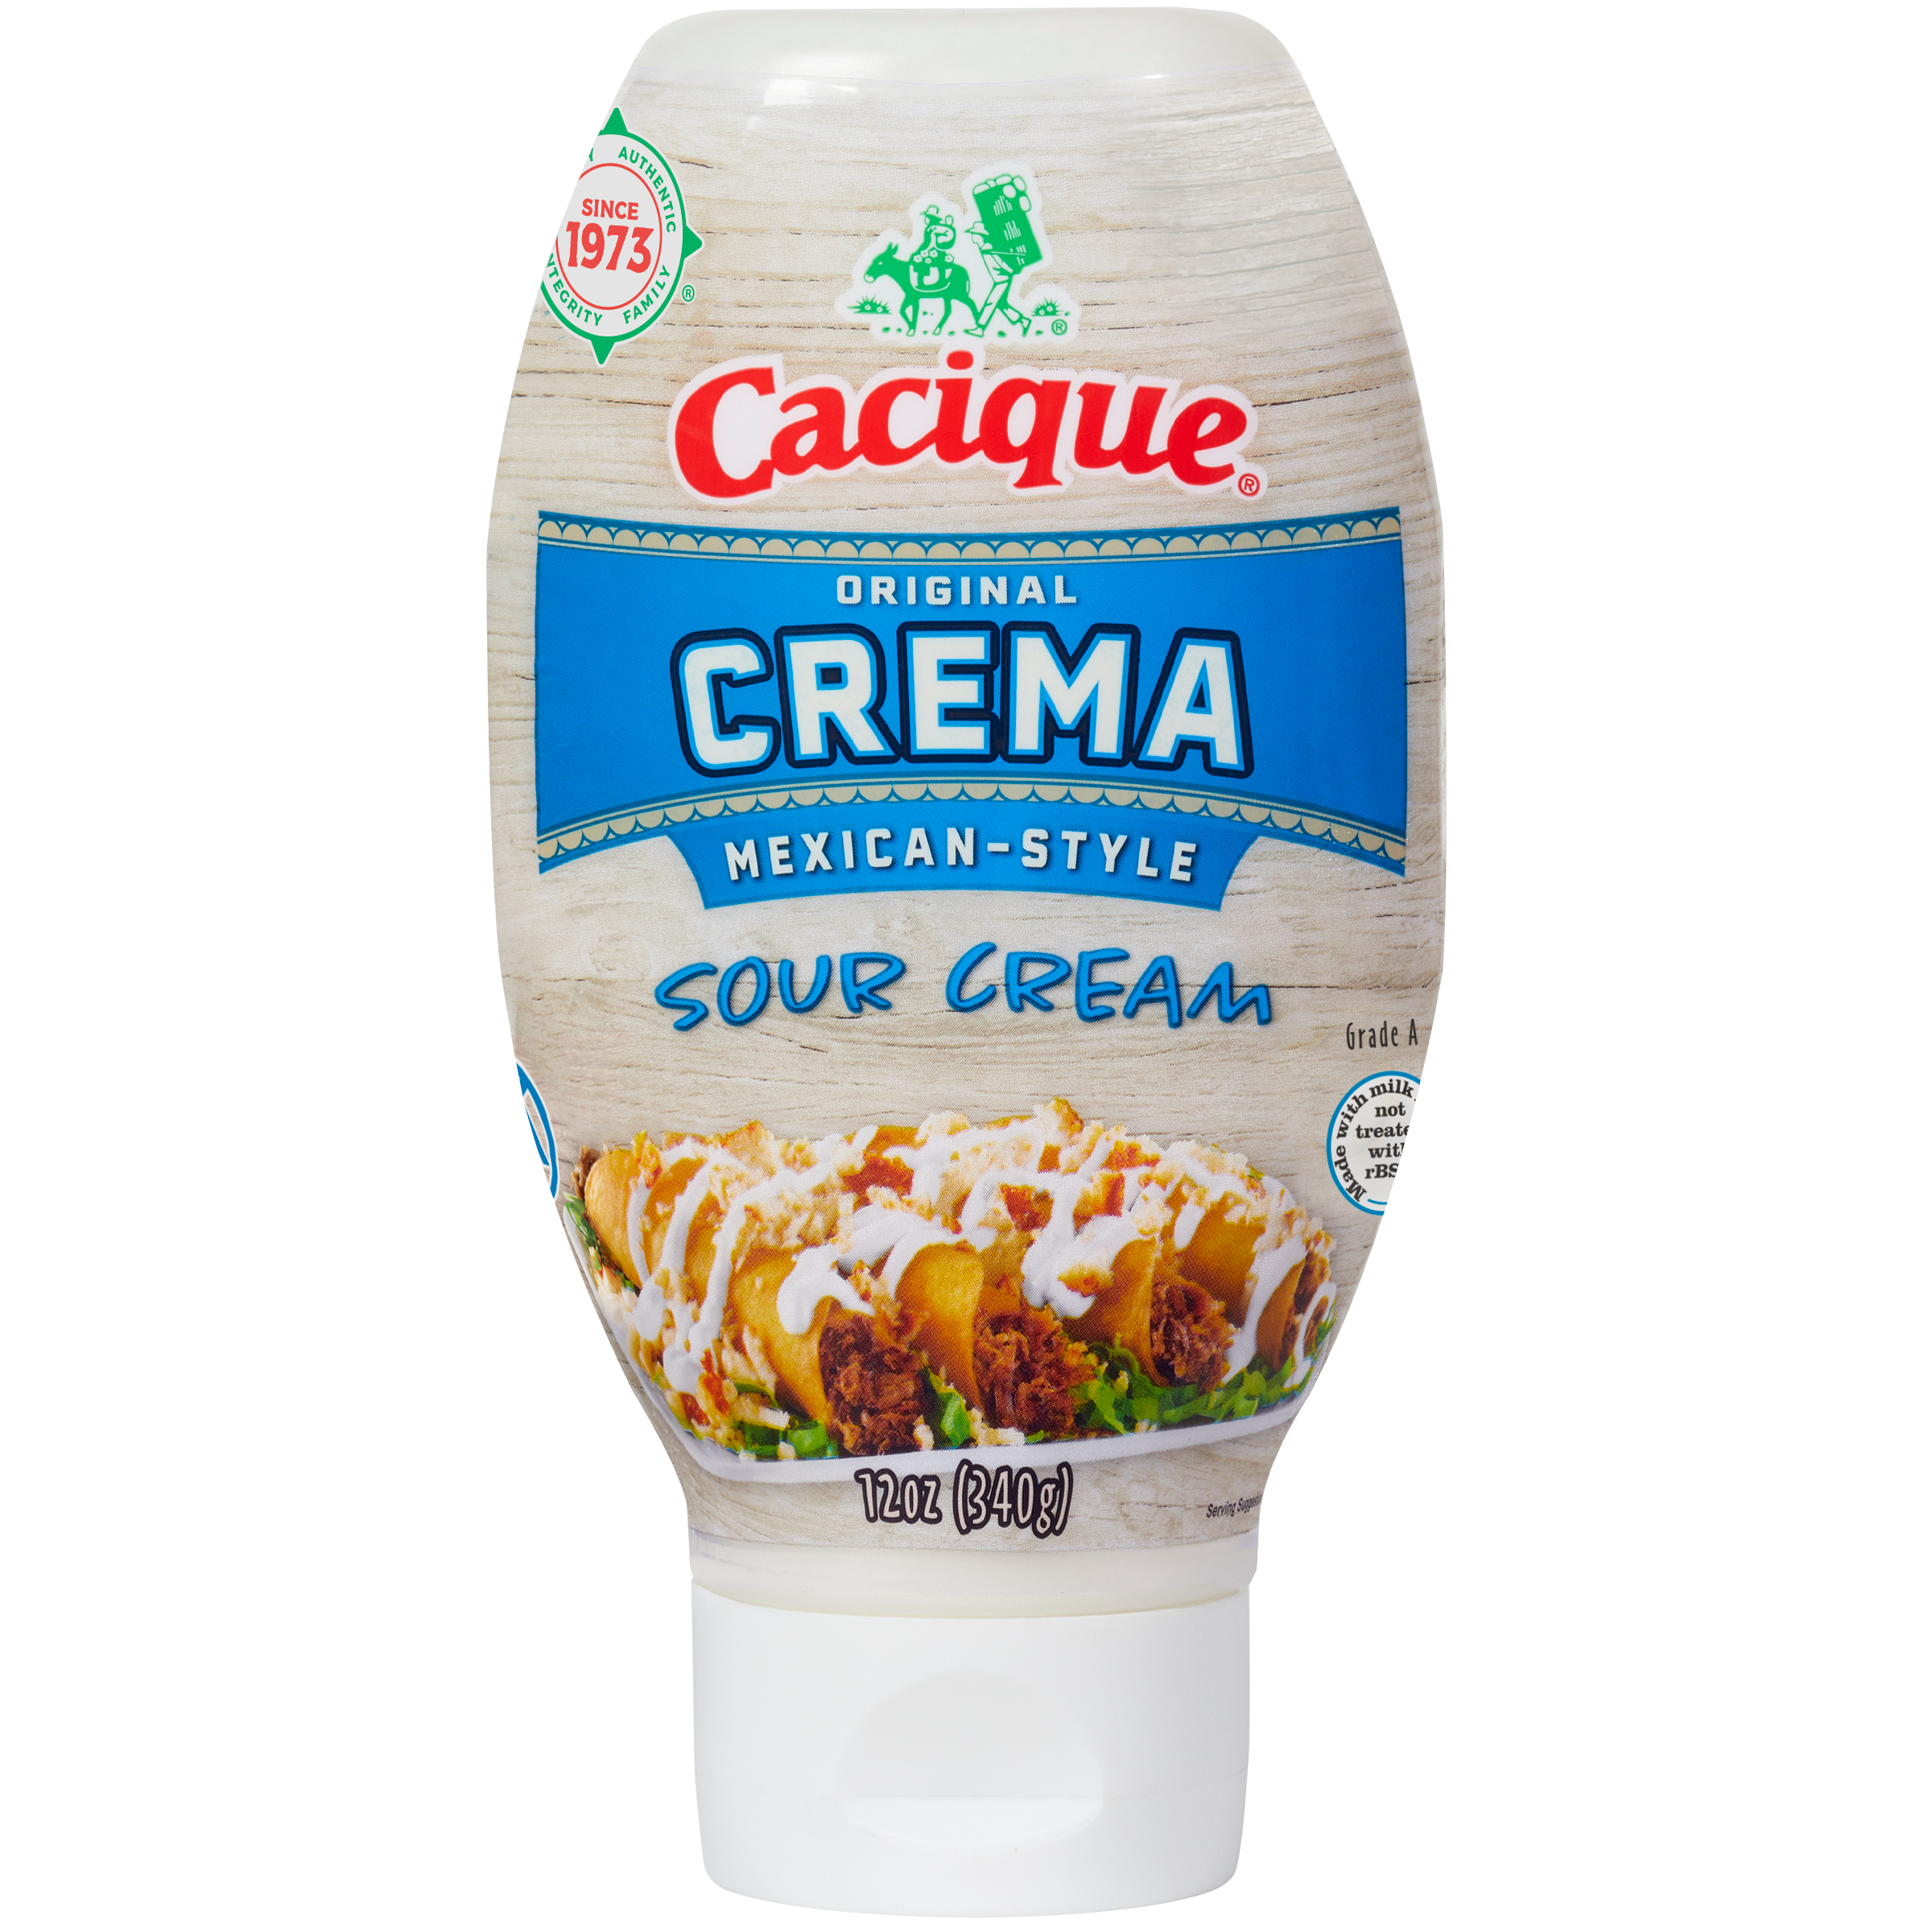 Original Crema Sour Cream